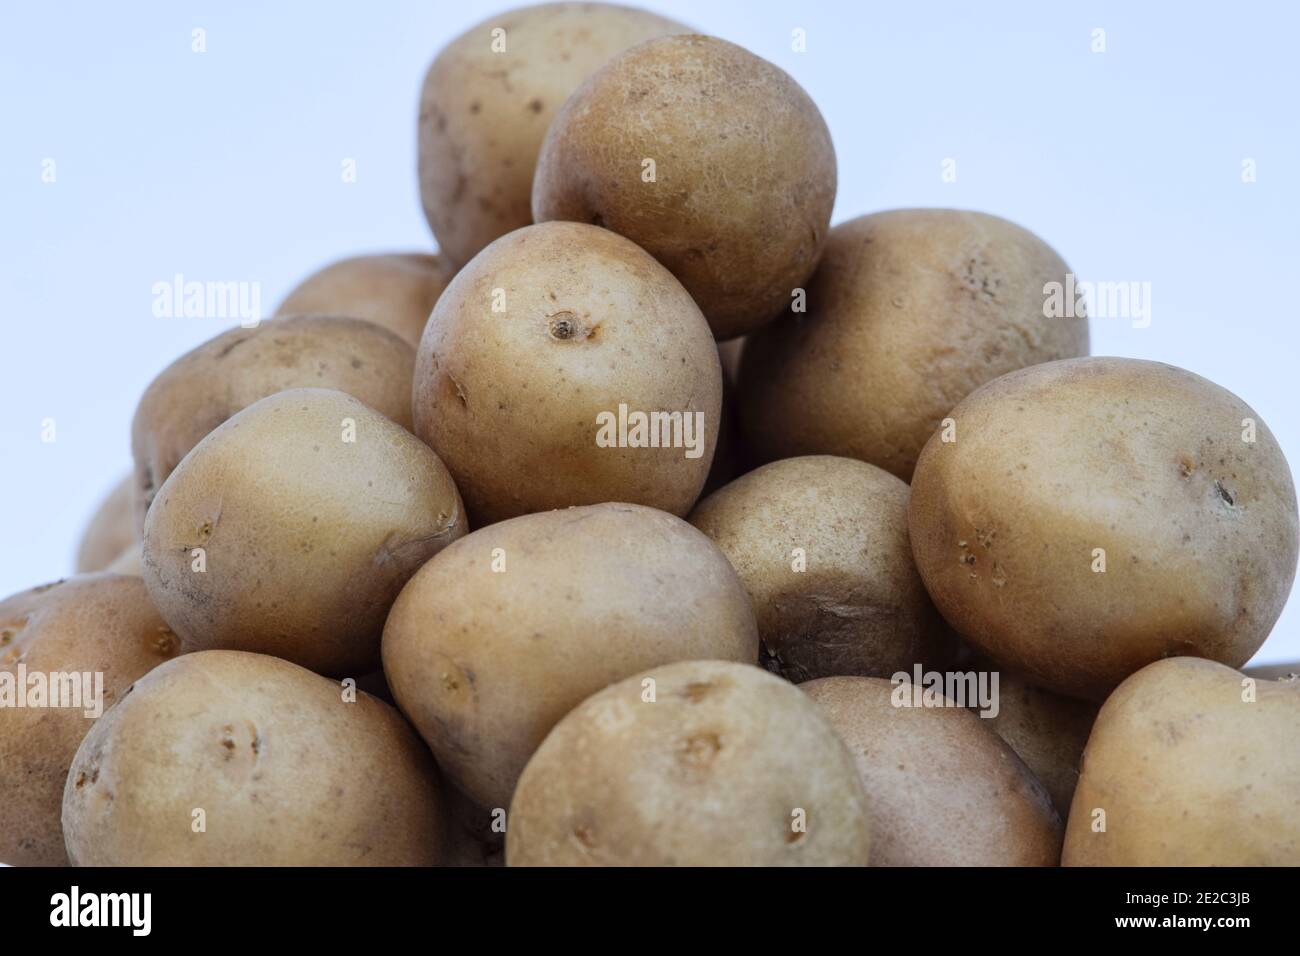 Baby Kartoffeln kleine runde Kartoffel aus indien auf weißem Hintergrund  Asiatisches Gemüse bei der Herstellung von vielen Gerichten Küche Artikel  verwendet Stockfotografie - Alamy